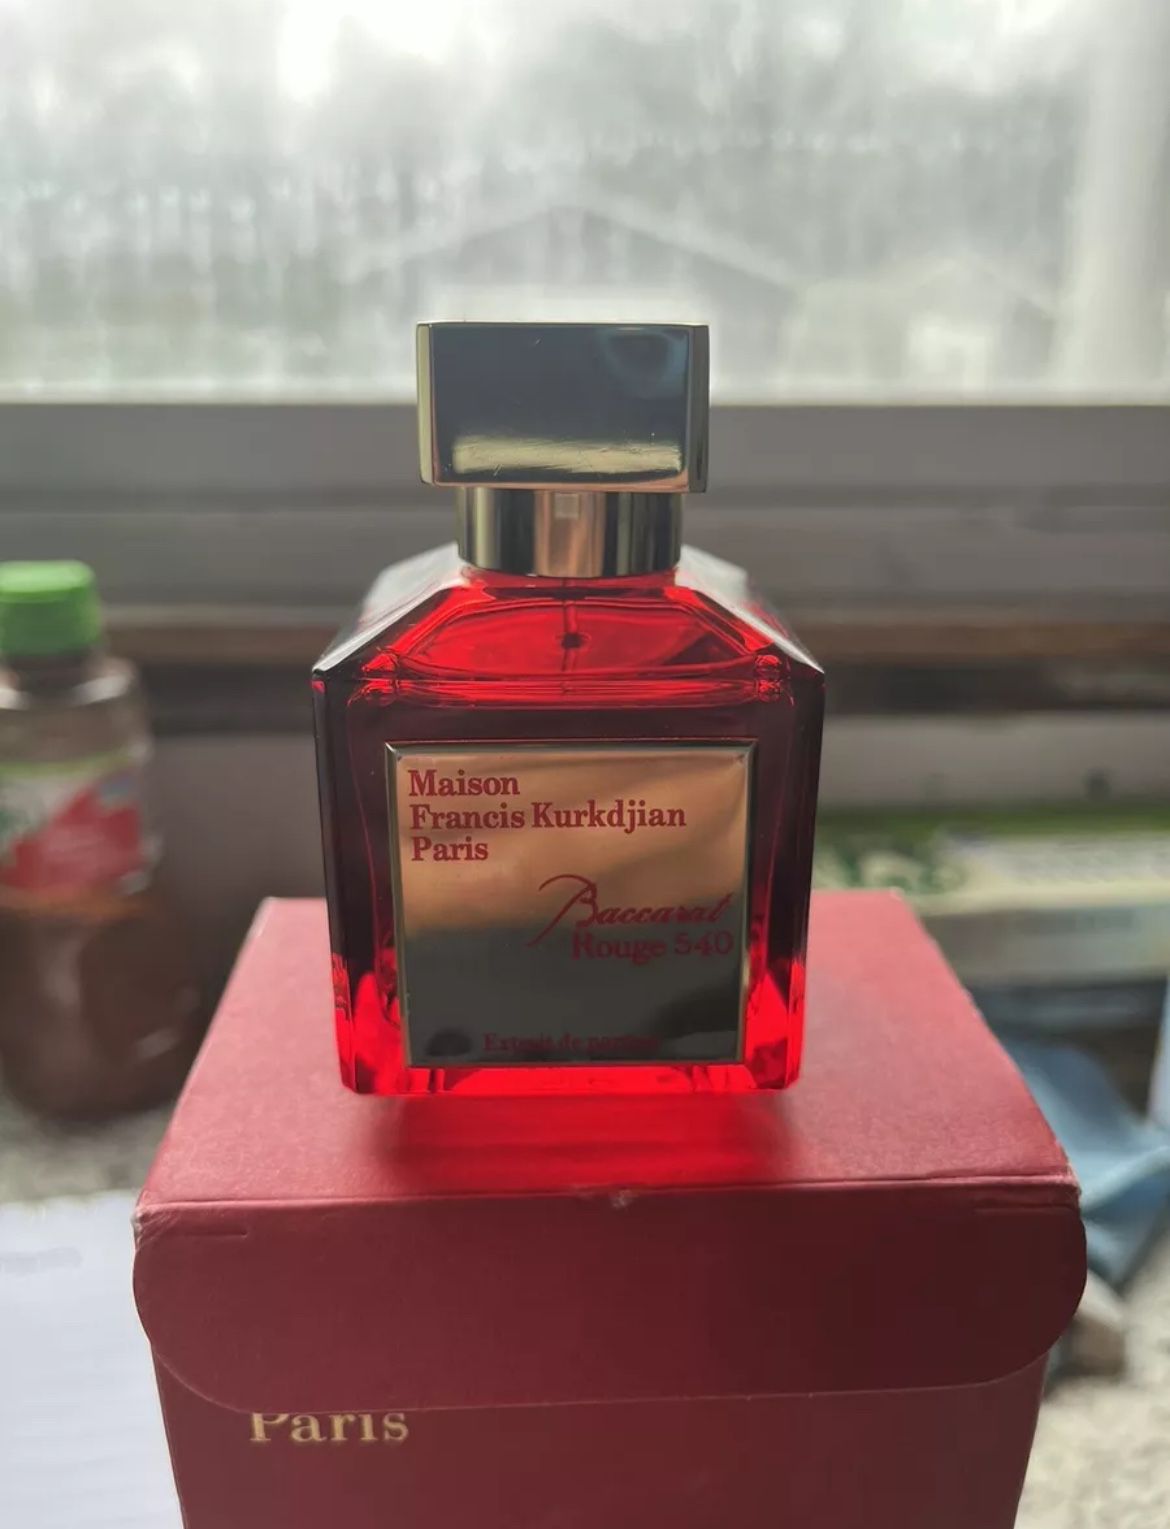 Maison Francis Kurkdjian  BACCARAT ROUGE 540  2.4fl oz  Extrait de Parfum